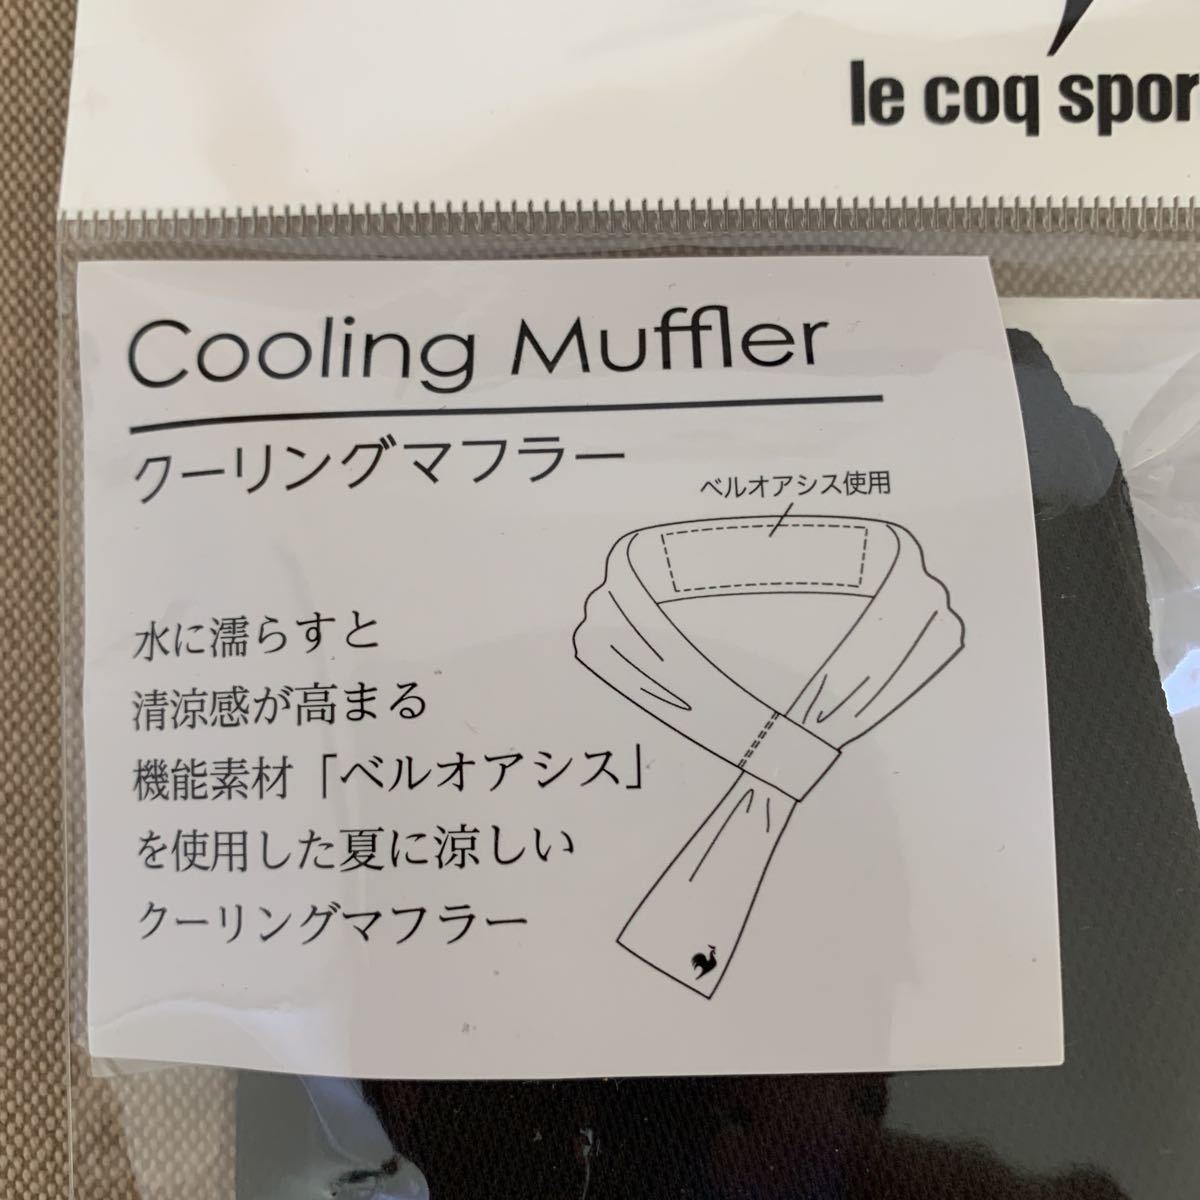  Le Coq кондиционер muffler черный обычная цена 2640 иен 